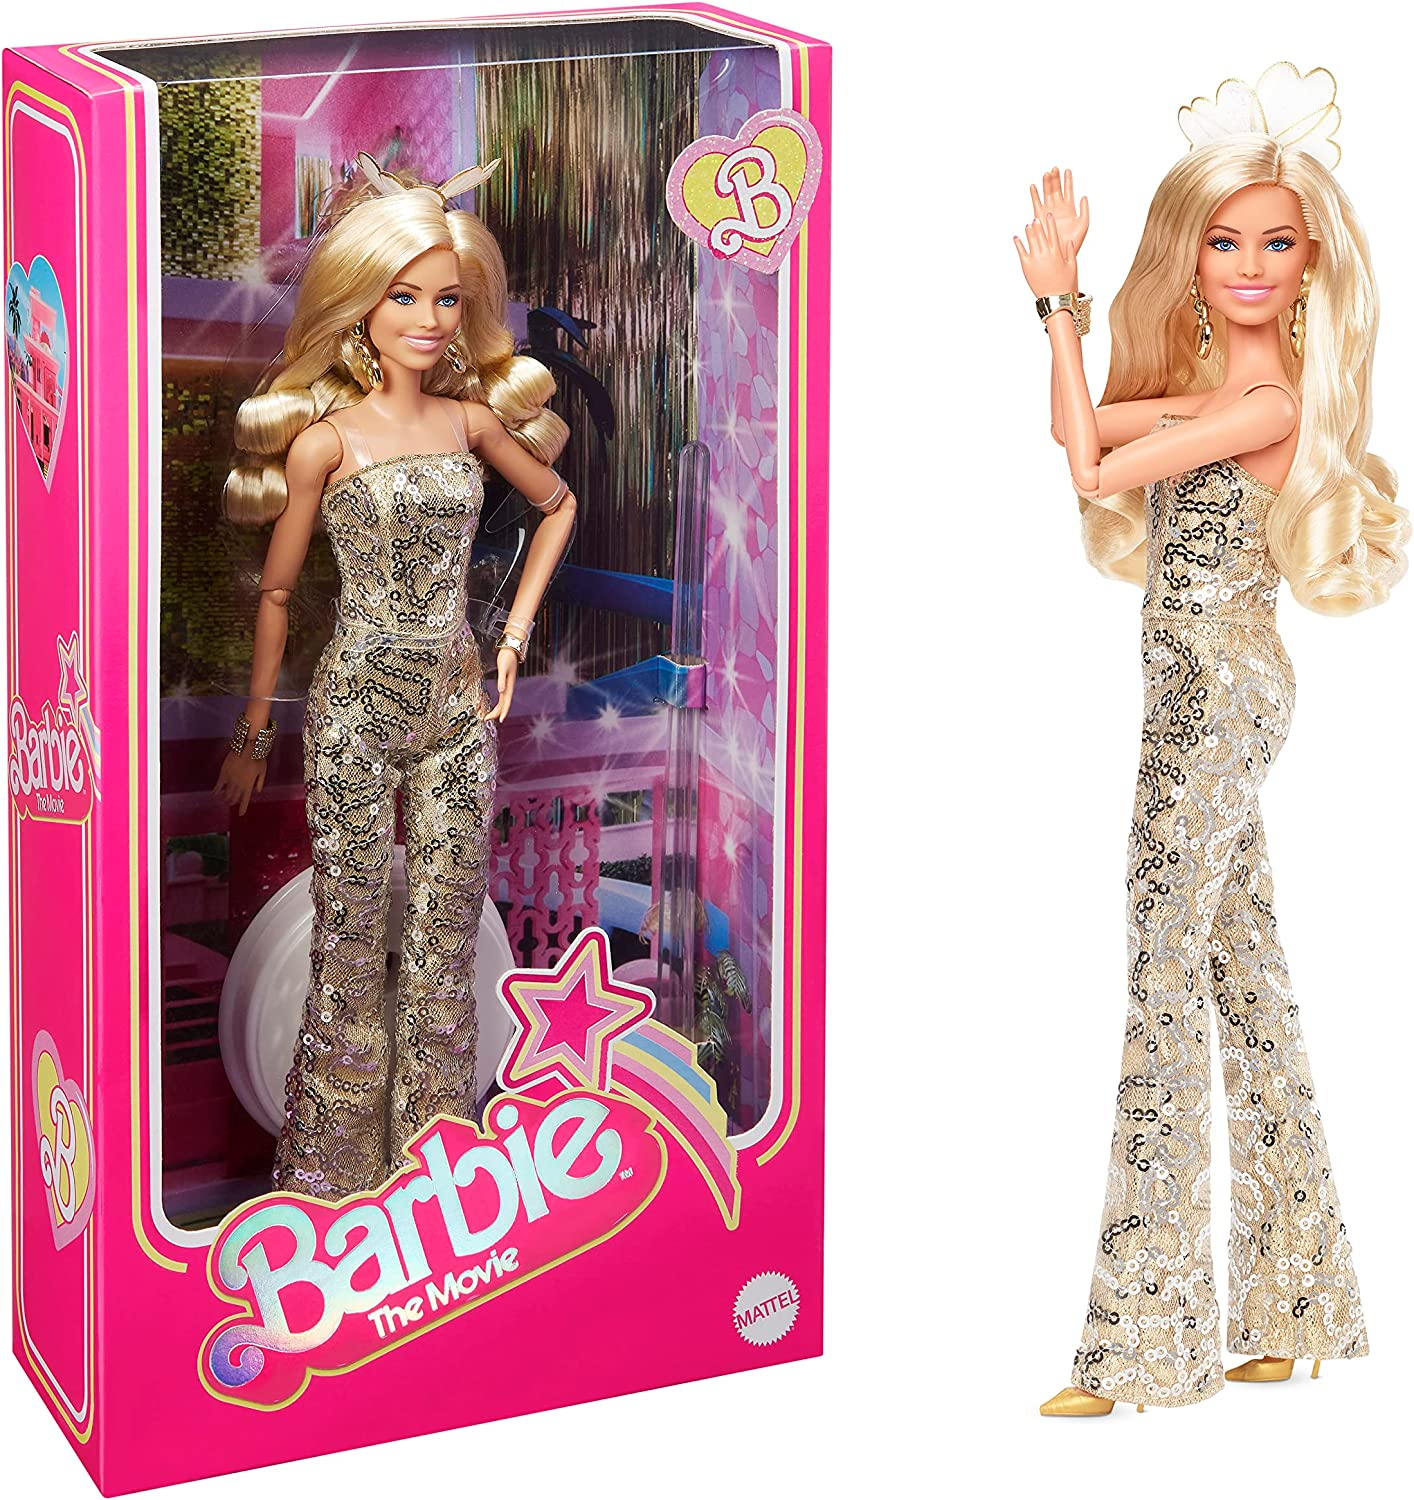 Barbie A Boneca do Filme, Margot Robbie como Barbie, Boneca Colecionável Vestindo Macacão Disco Dourado com Cachos Brilhantes e Saltos Dourados, HPJ99